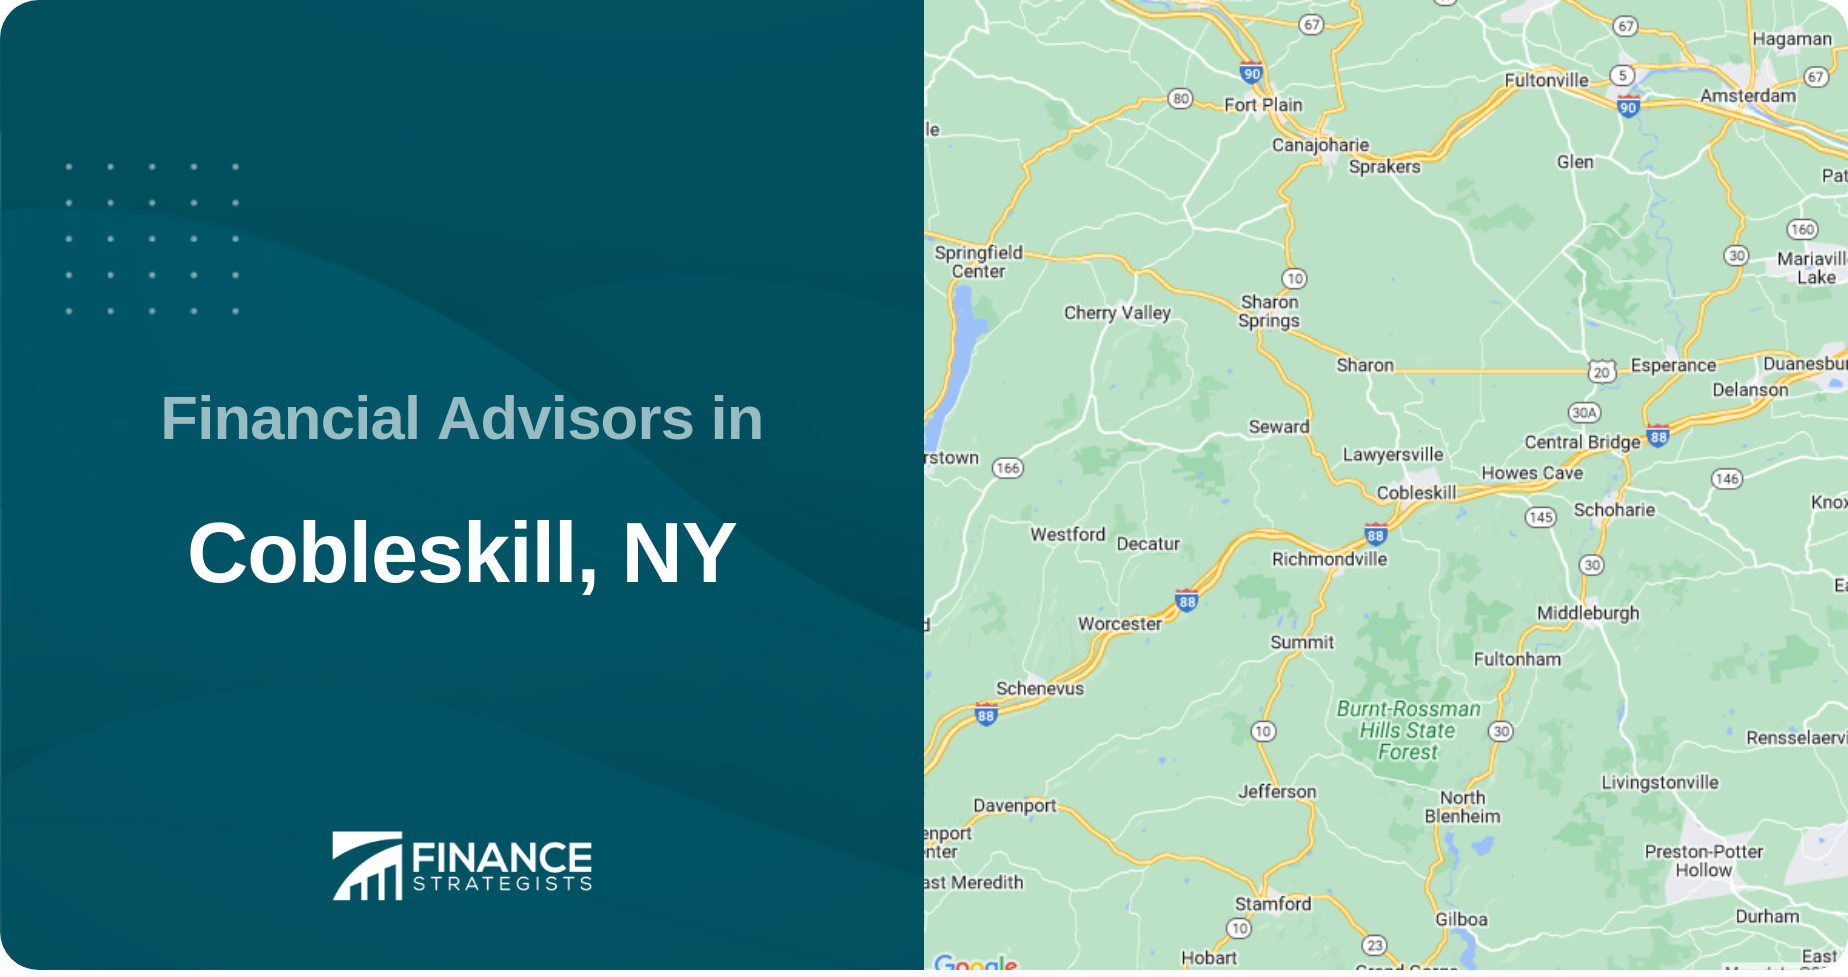 Financial Advisors in Cobleskill, NY